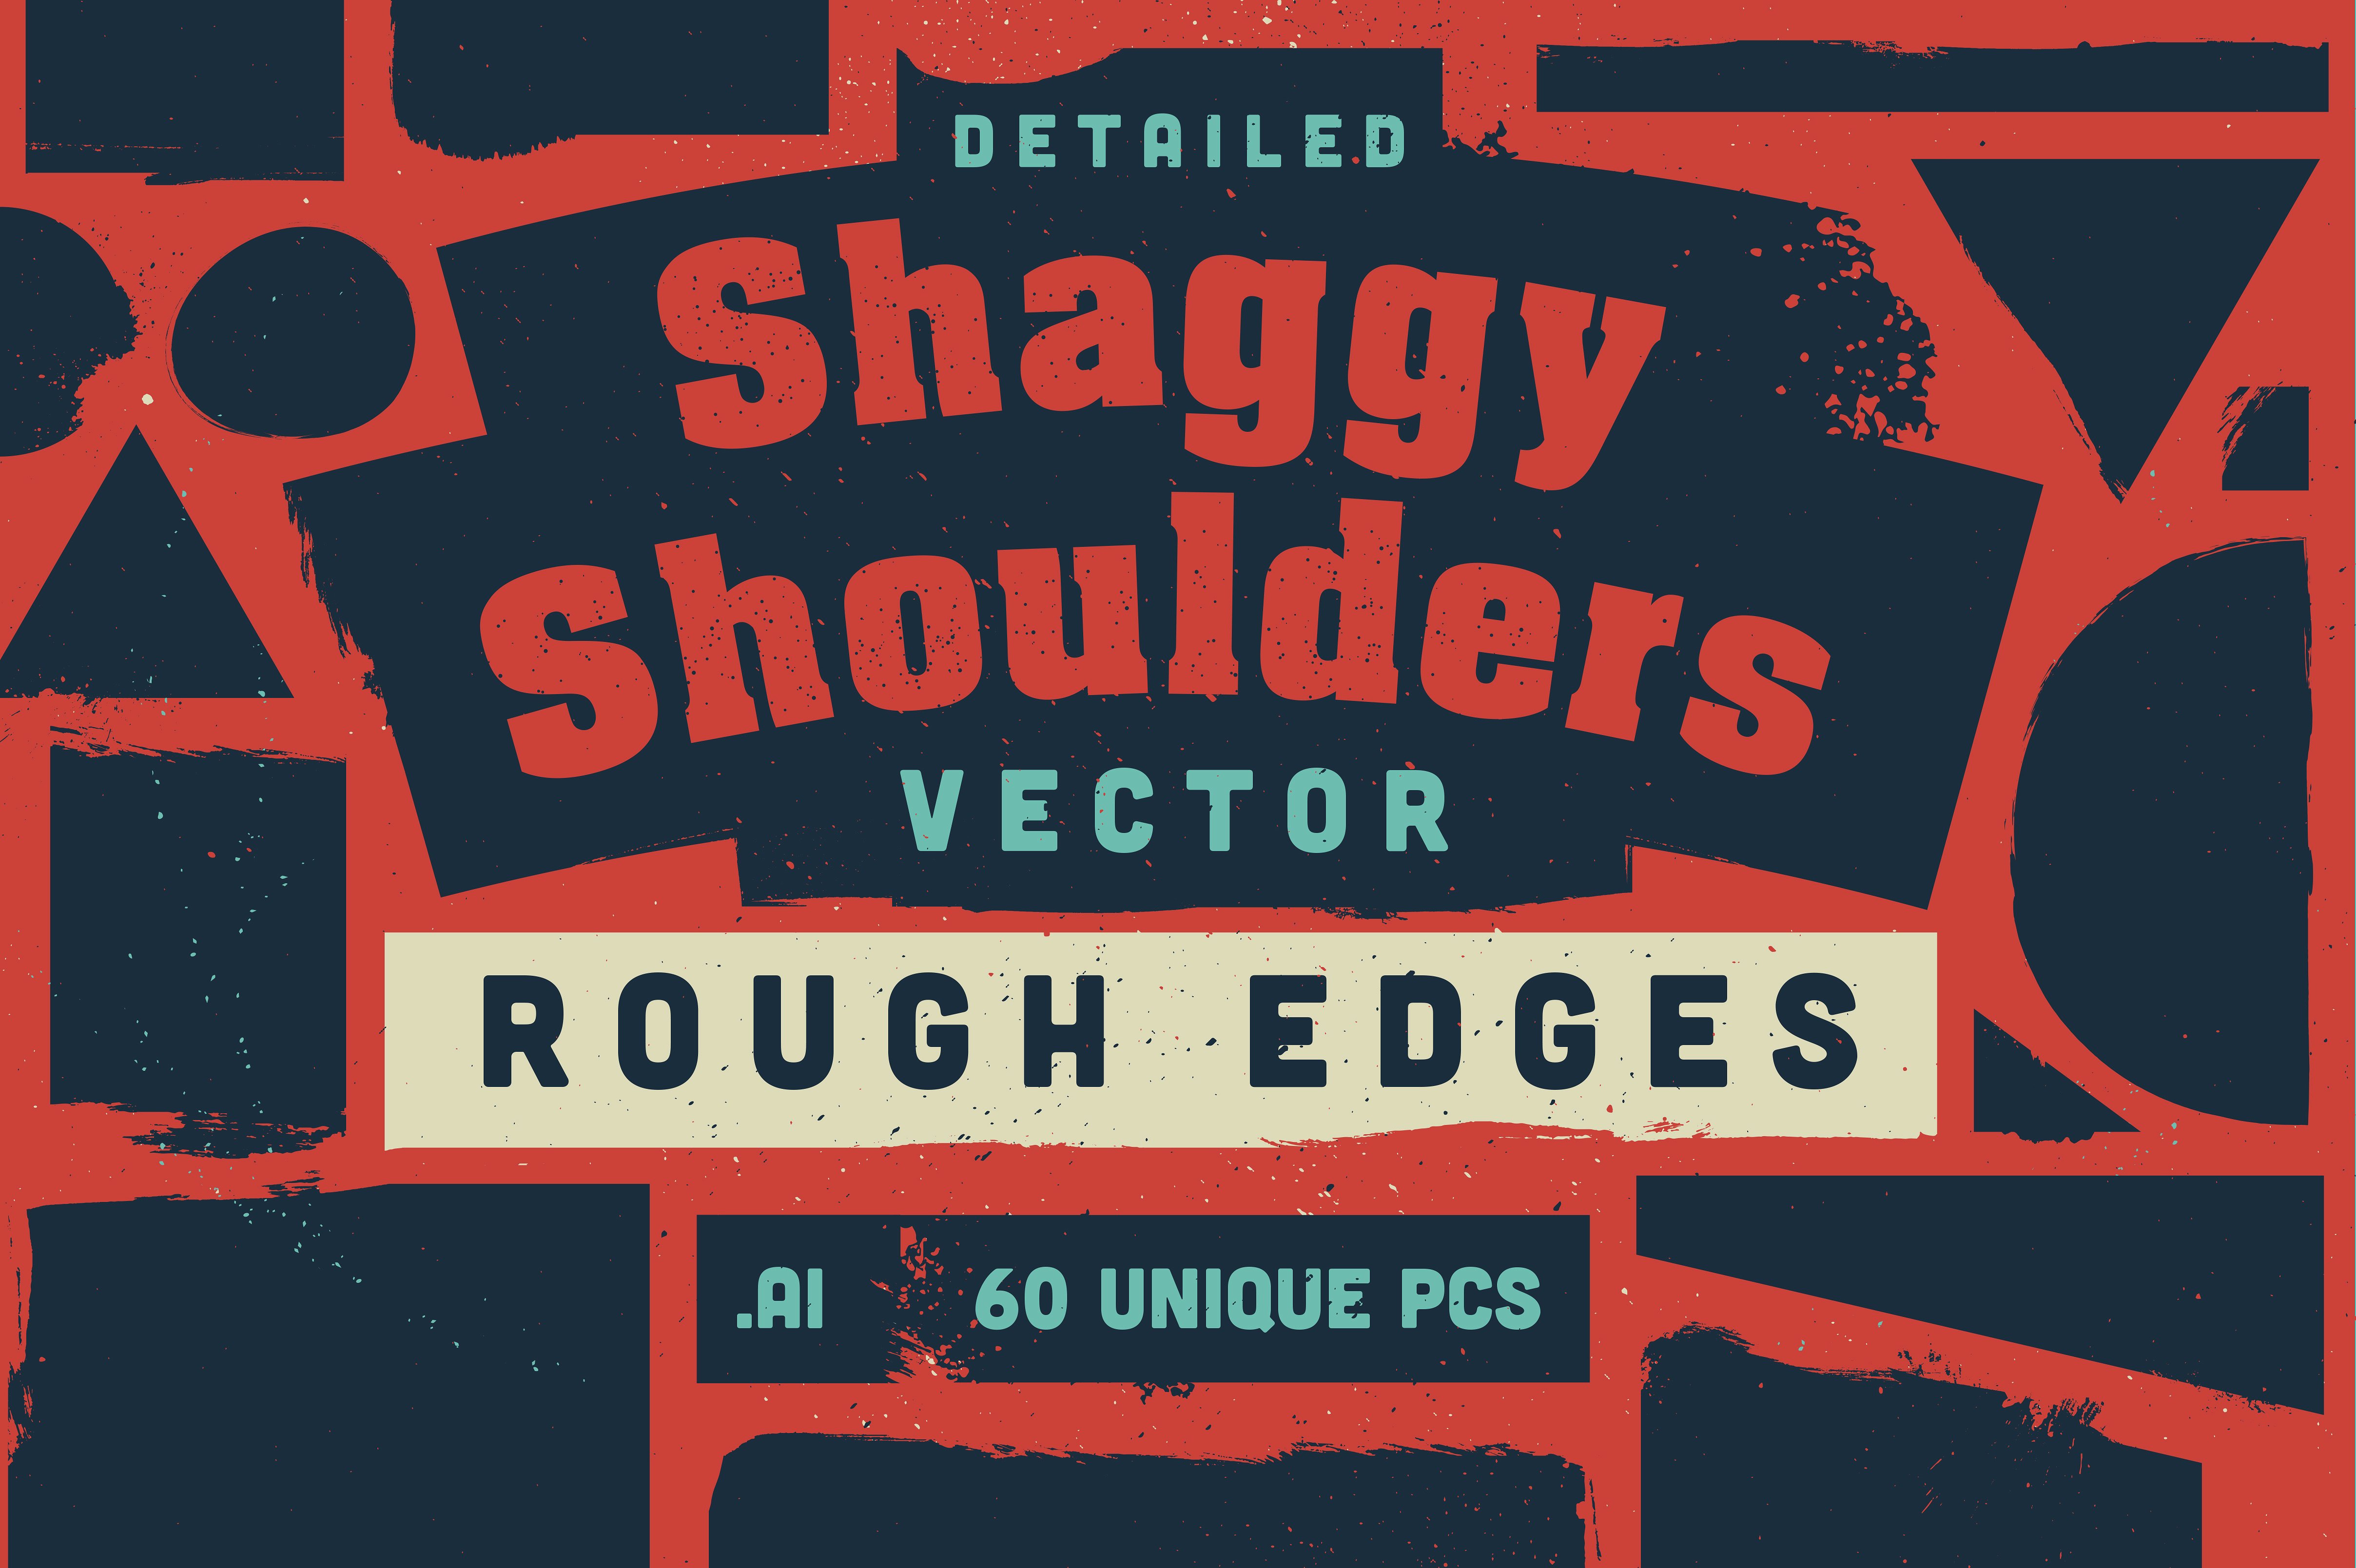 毛茸茸、粗糙的肩膀多形状矢量图案 Shaggy Shoulders Vector Shapes插图